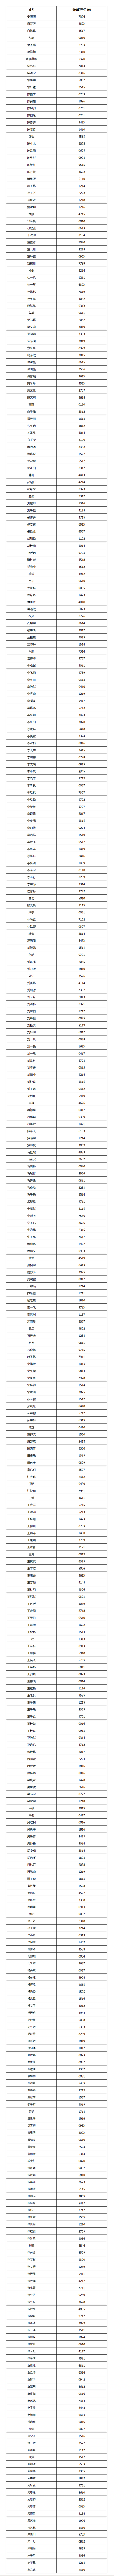 南方科技大学2021年综合评价初评通过考生名单（北京市）